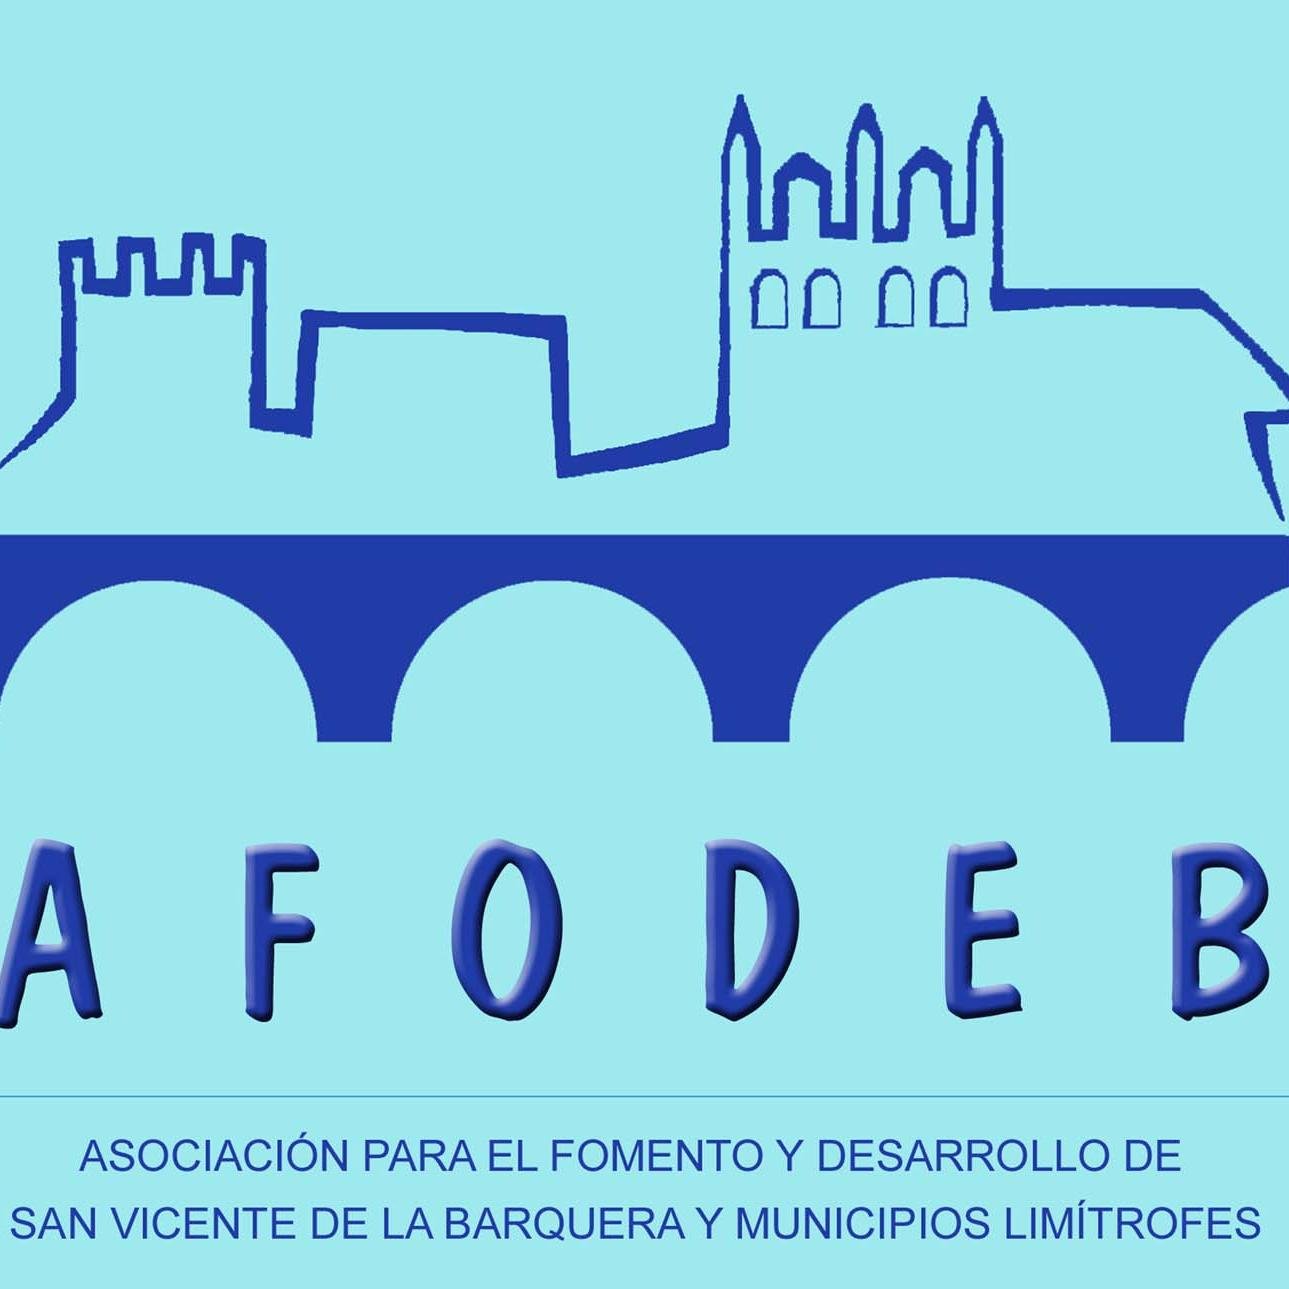 AFODEB, Asociación para el Fomento y Desarrollo de San Vicente de la Barquera y Municipios Limítrofes. Guía empresarial